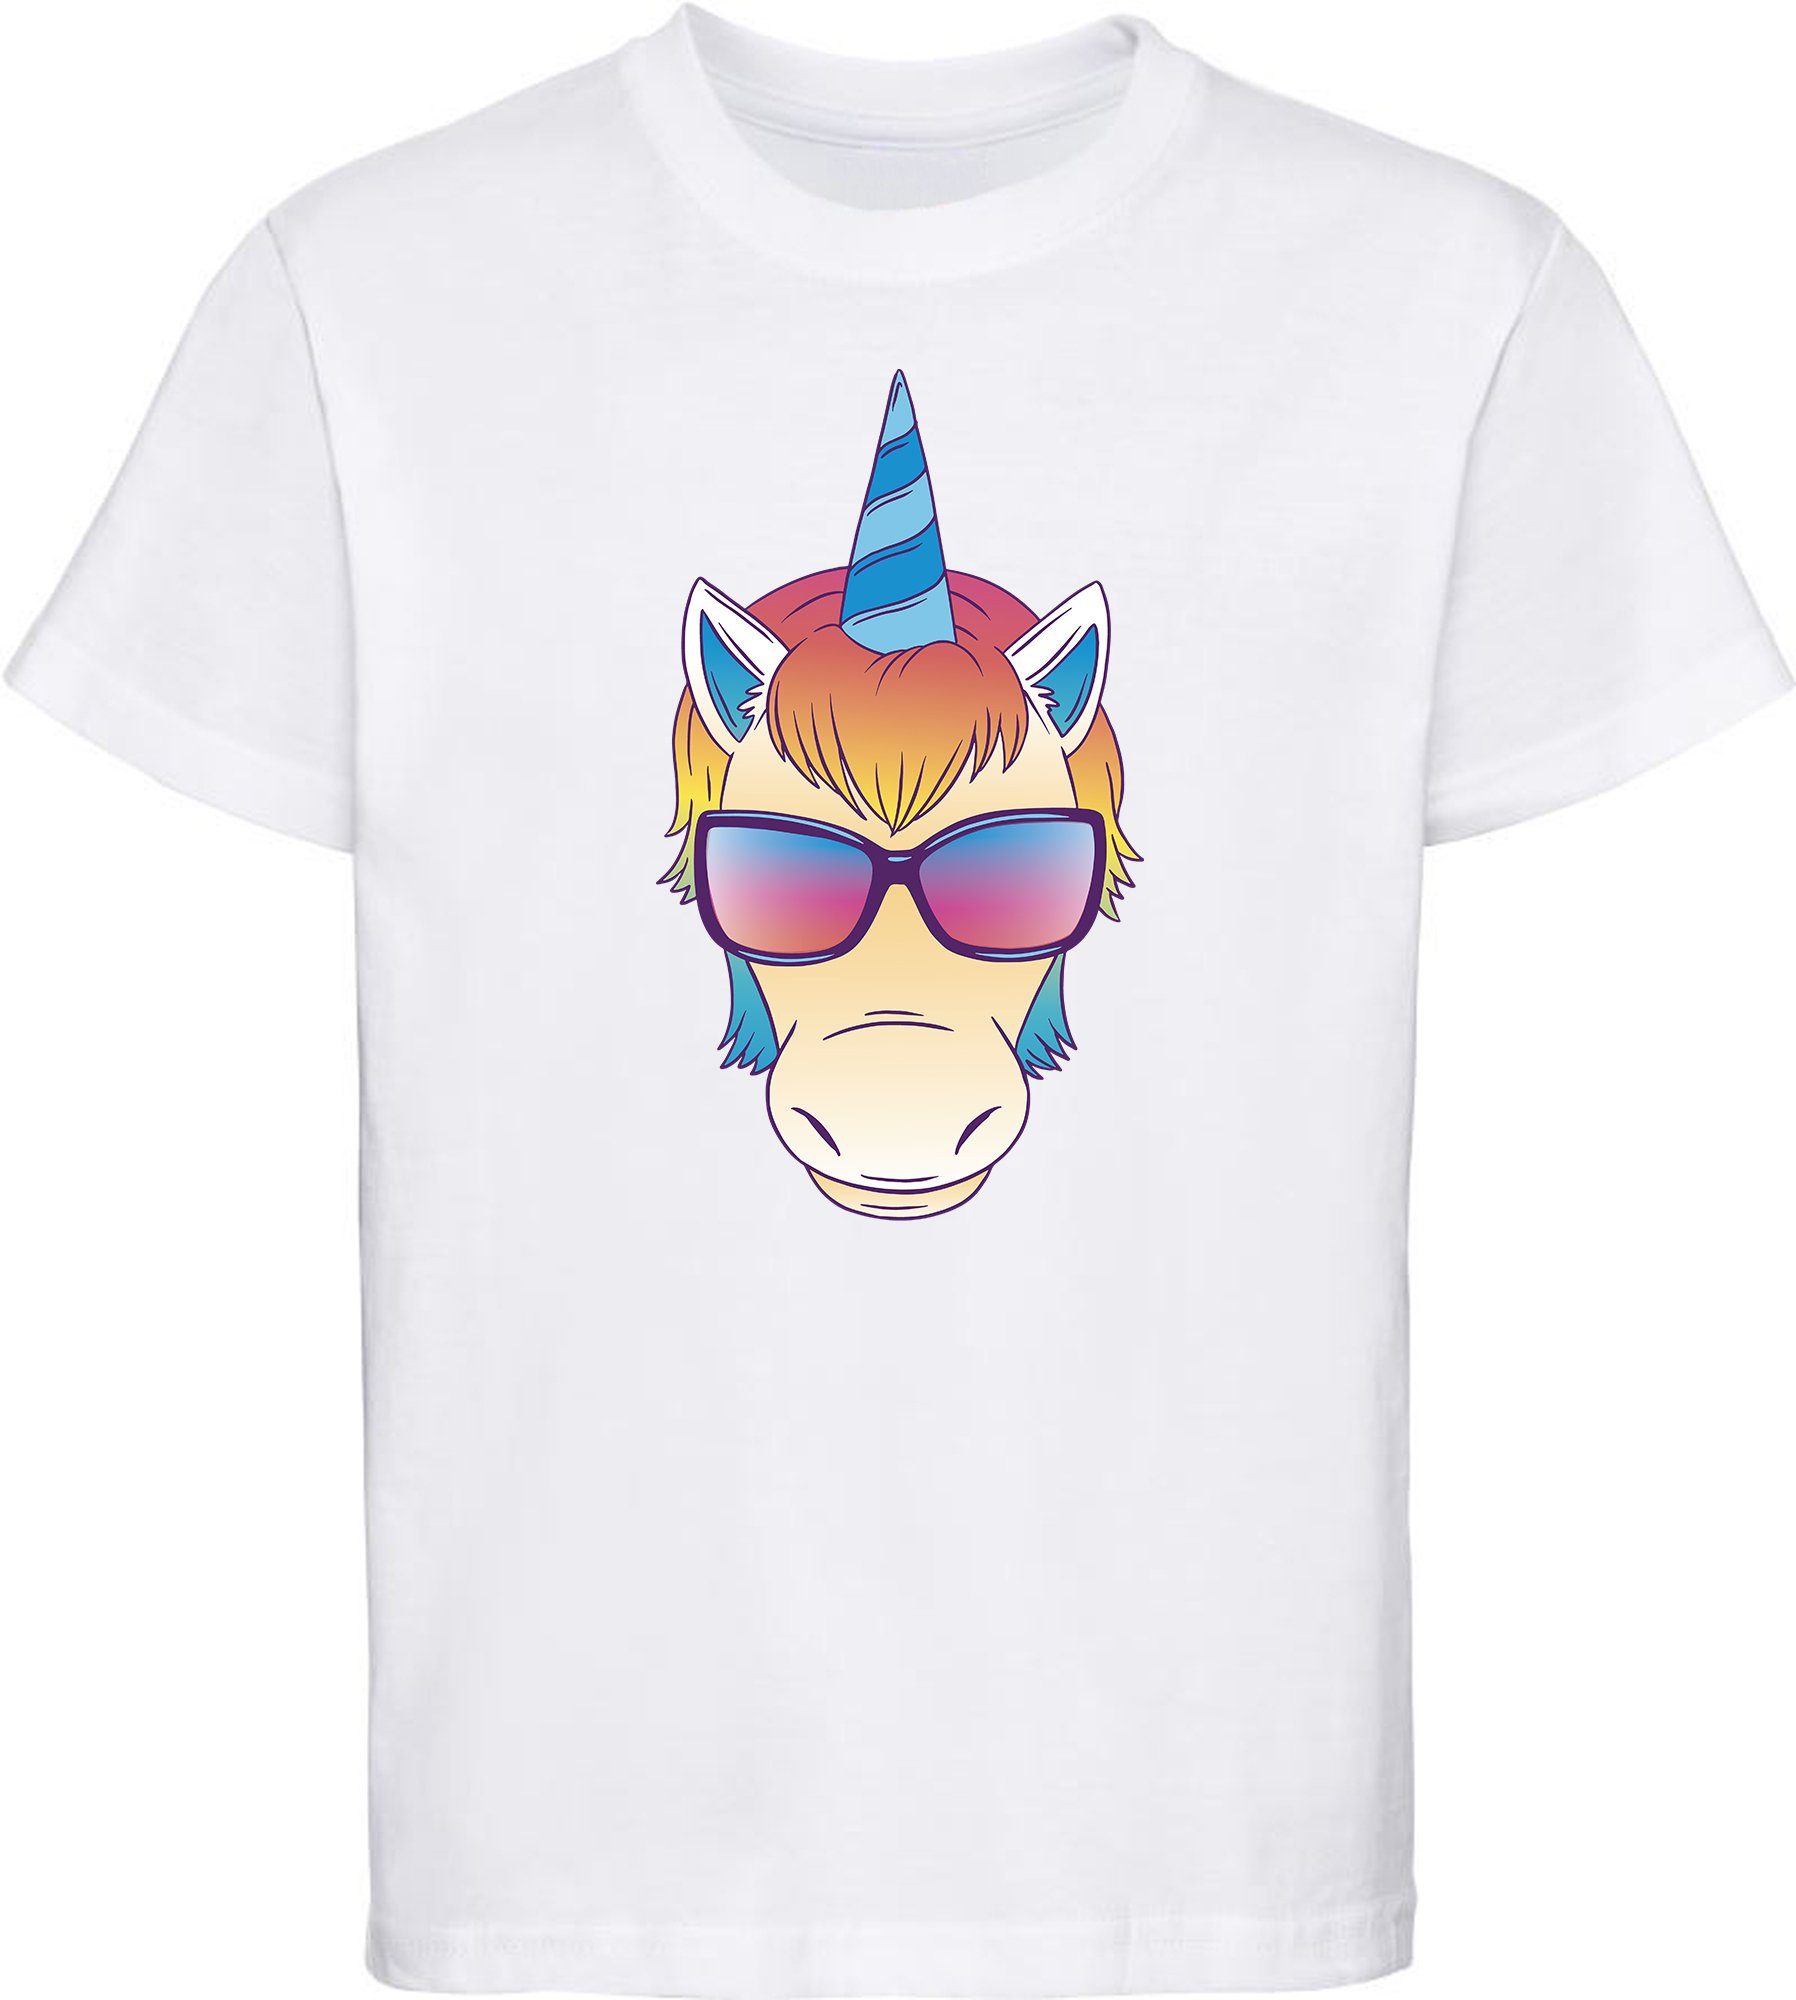 MyDesign24 T-Shirt Kinder Print Shirt bedruckt - Einhorn Kopf mit Sonnenbrille Baumwollshirt mit Aufdruck, i255 weiss